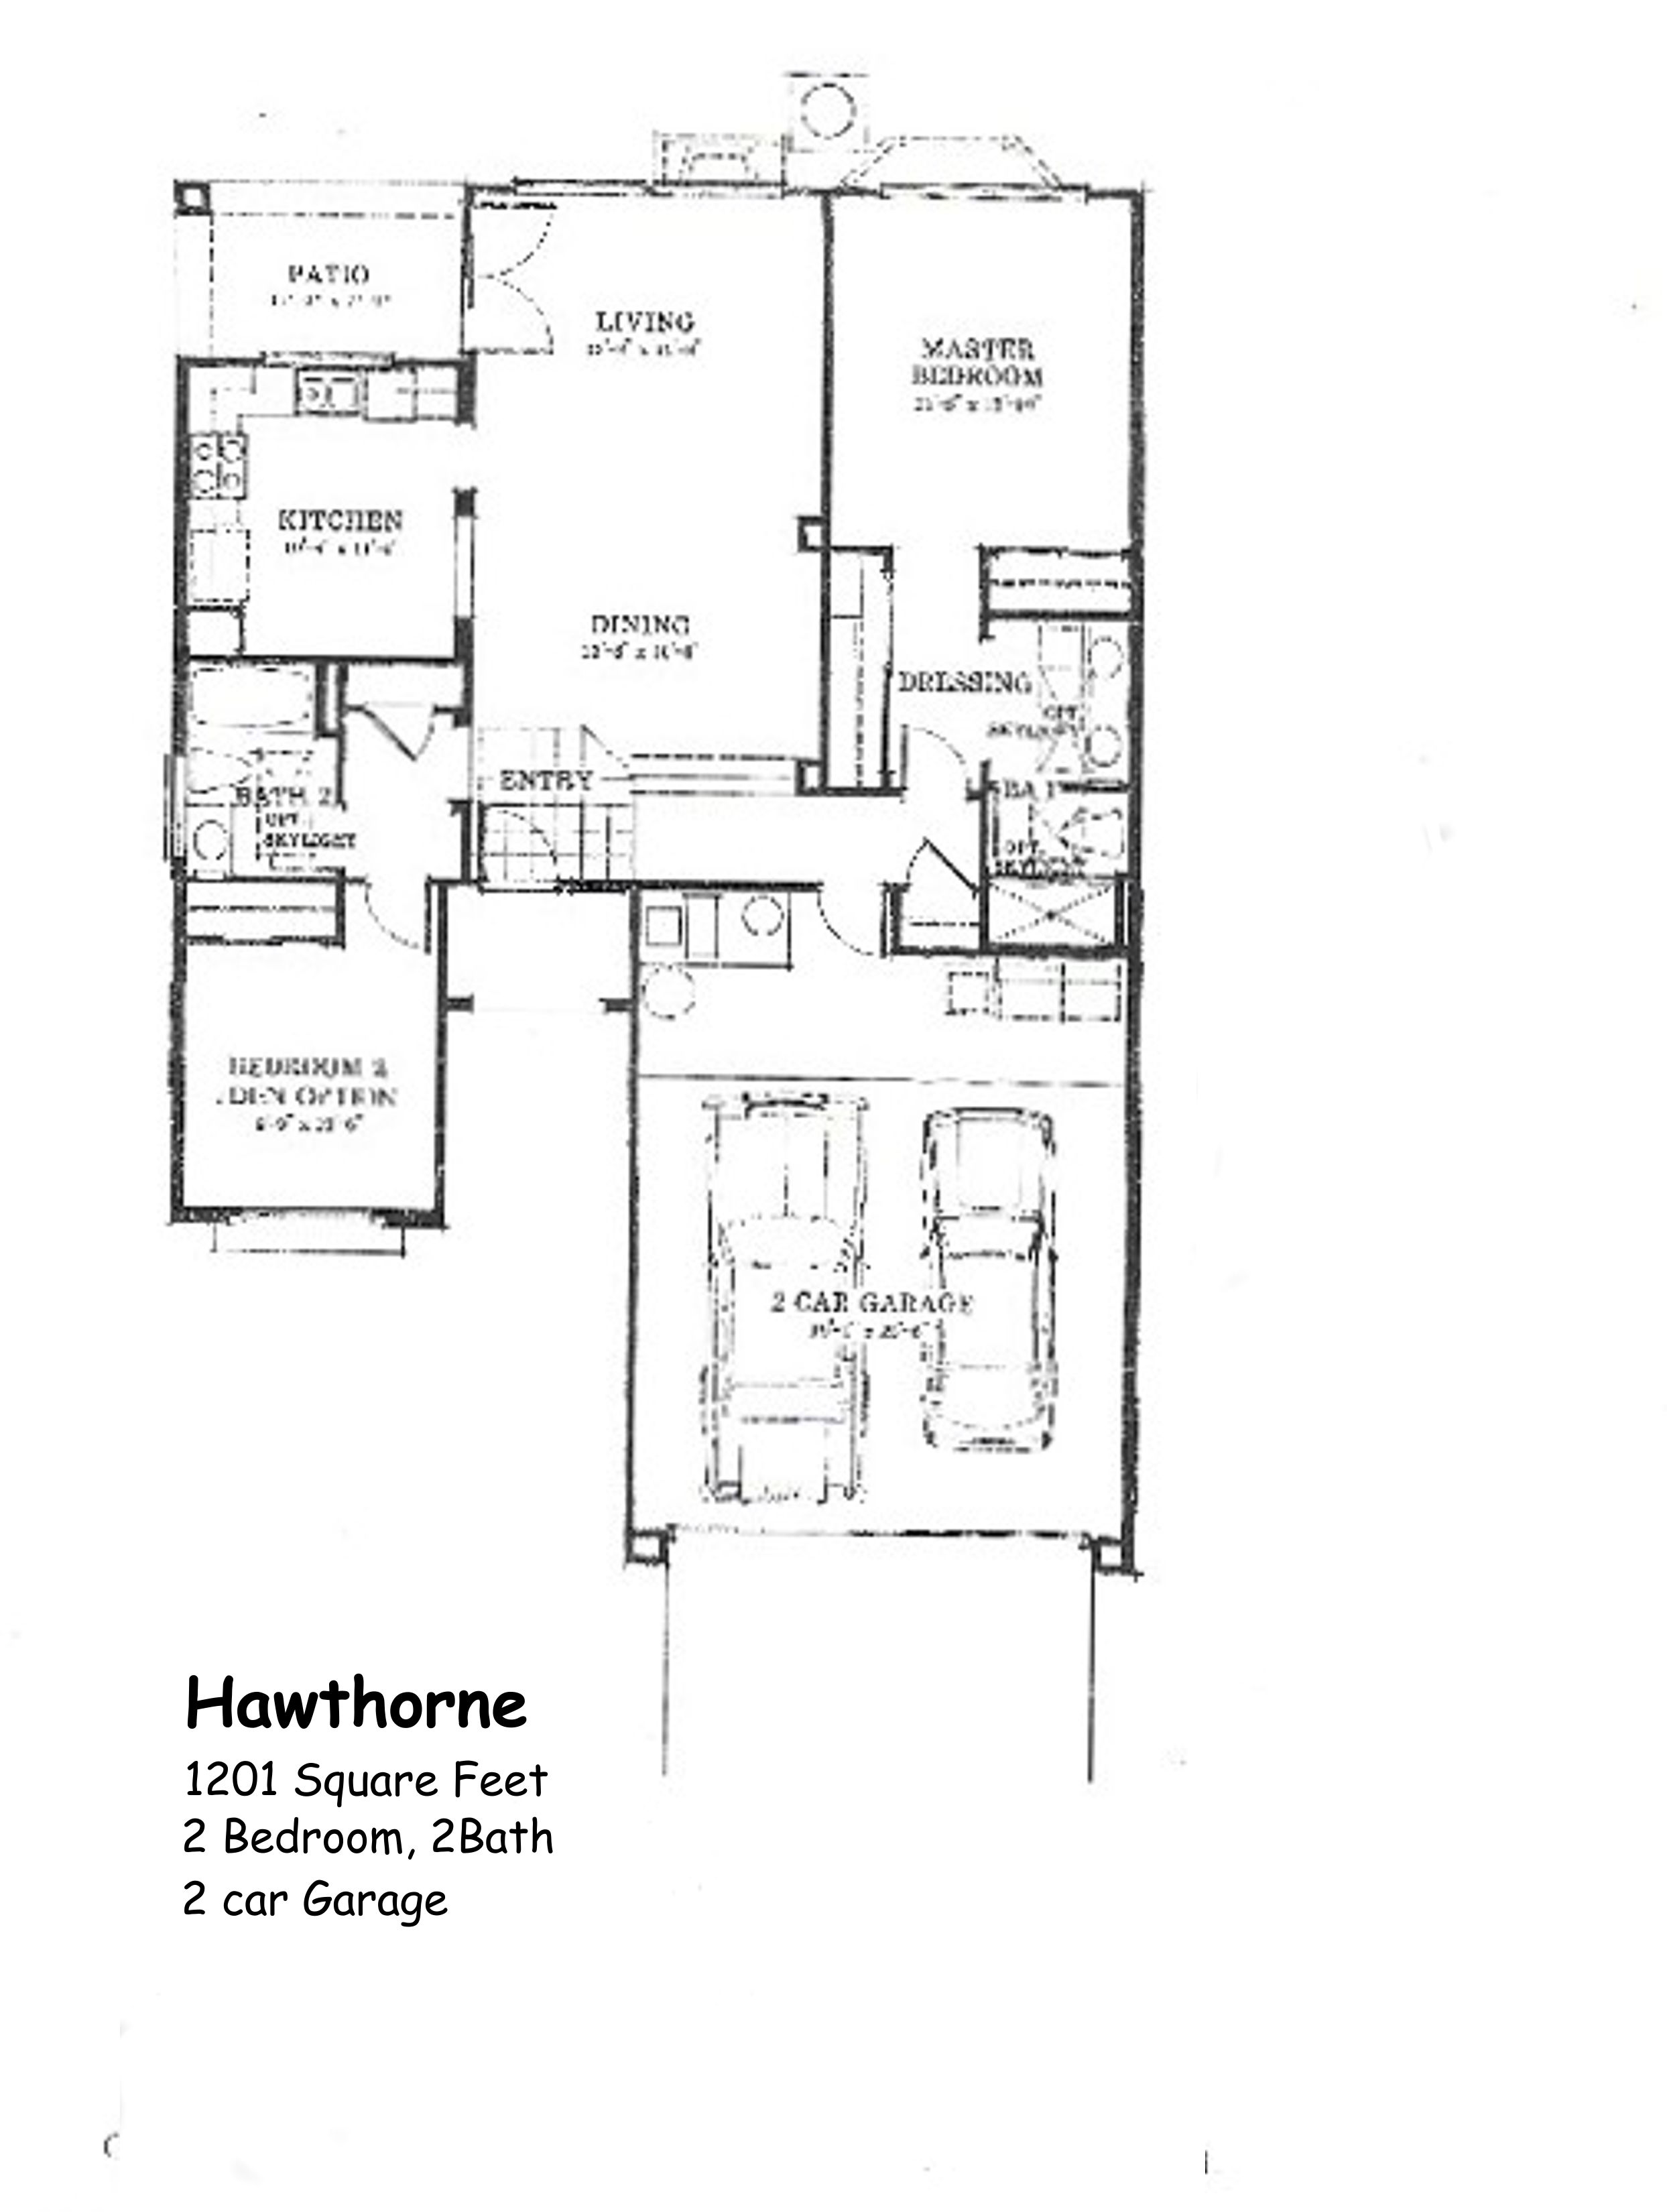  Hawthorne Floor Plan